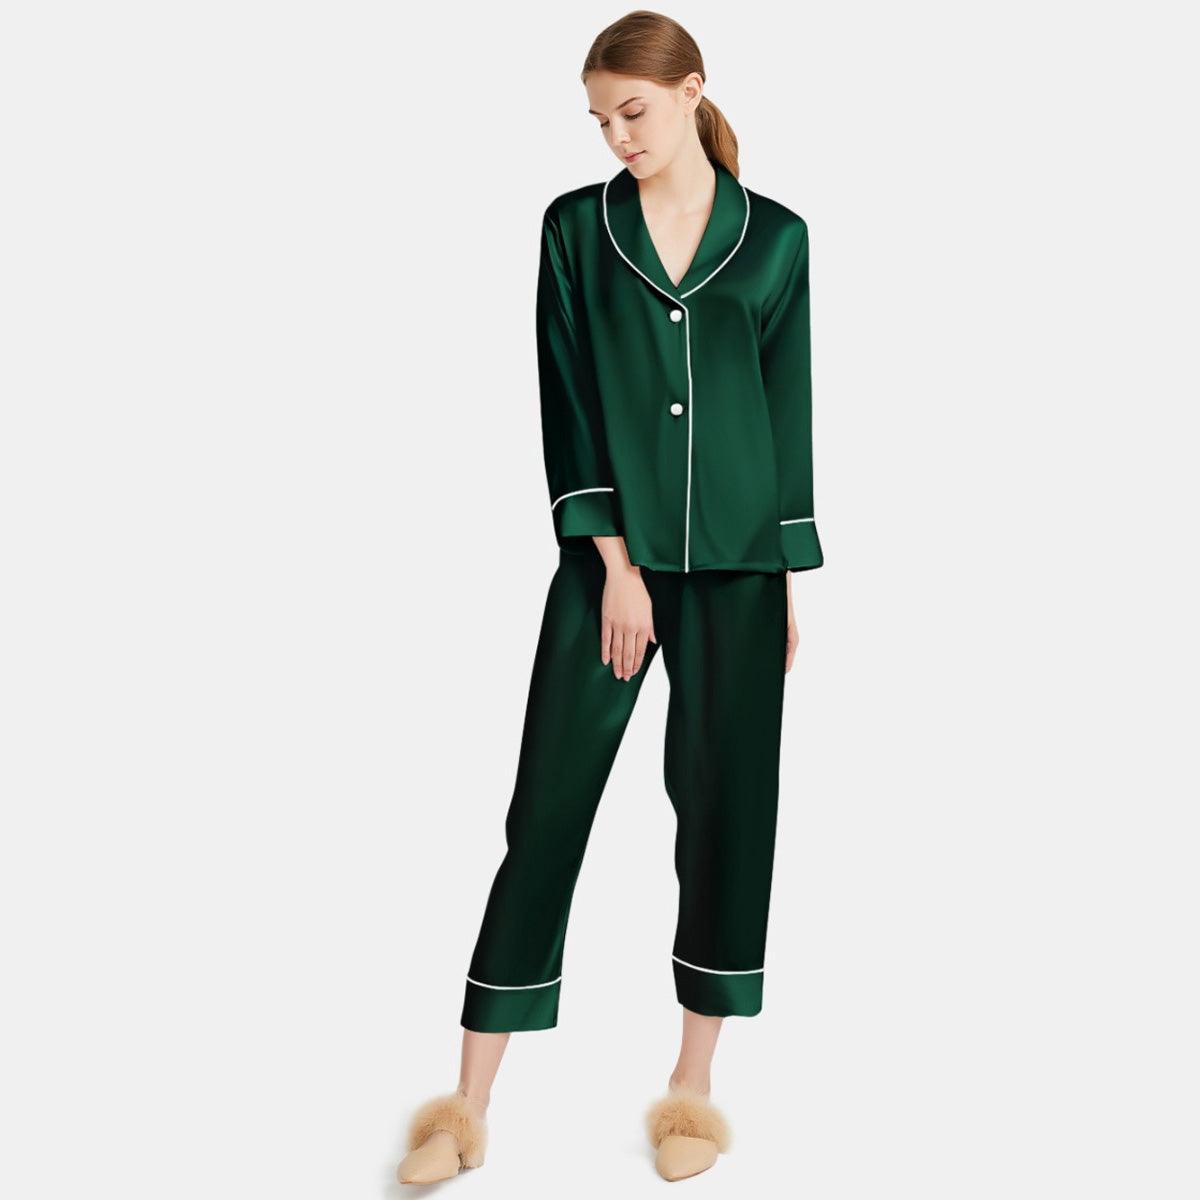 Women Silk Pajamas Long Sleeve Two-piece Sleepwear Pure Silk Pajama Set - DIANASILK